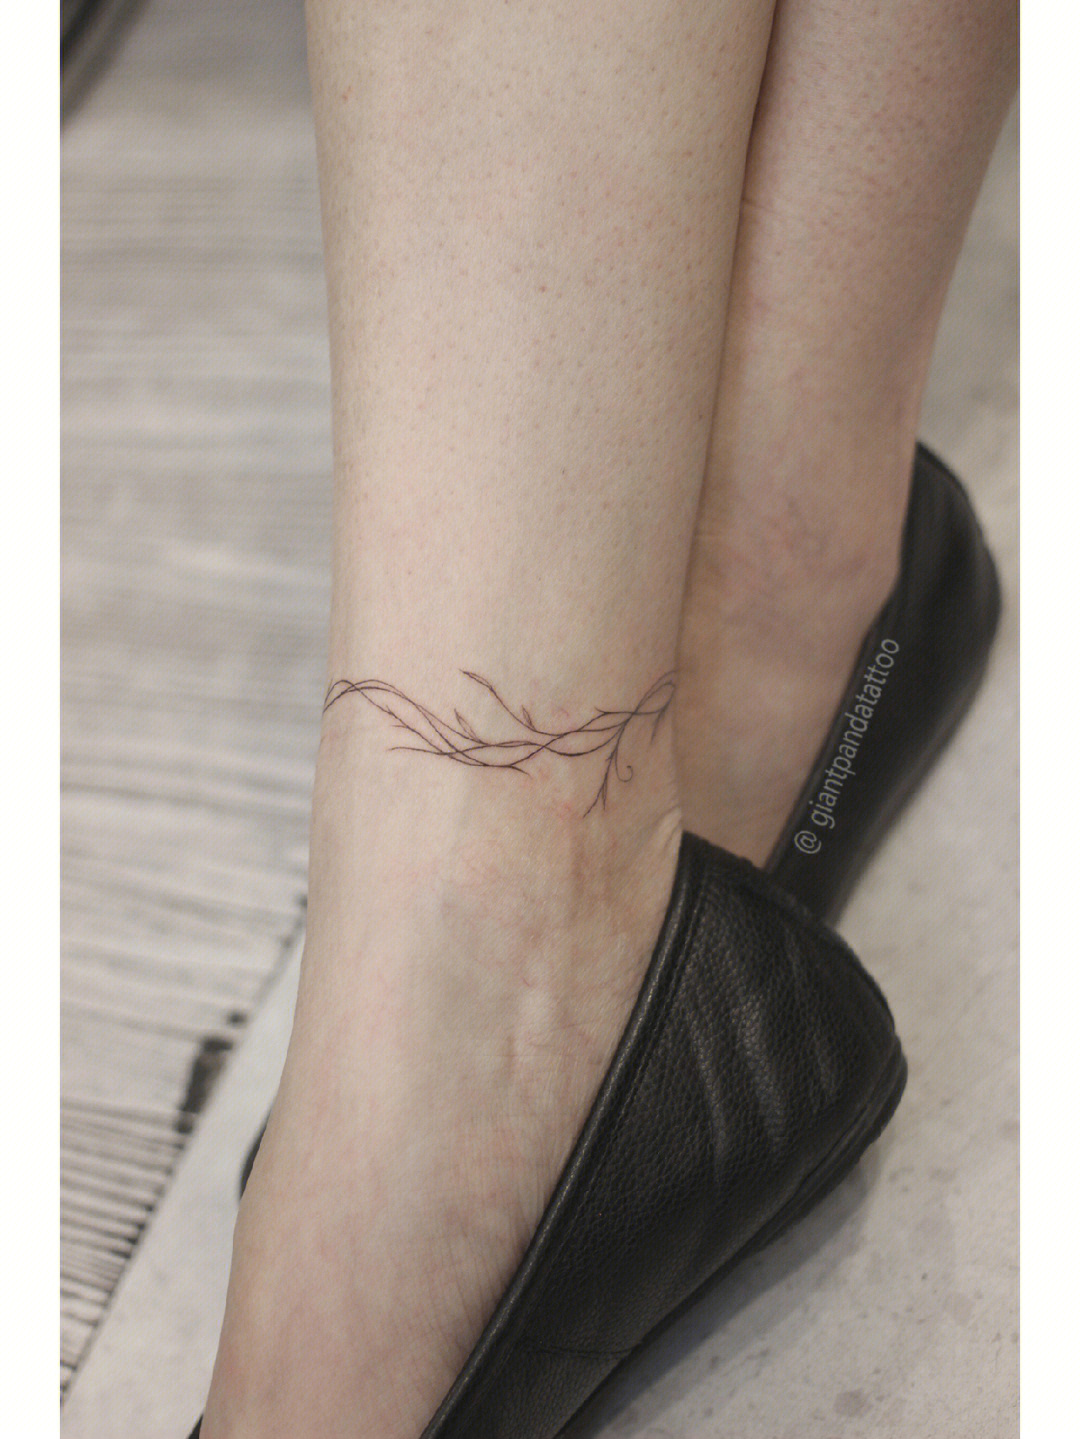 纹身带刺的藤蔓图案图片